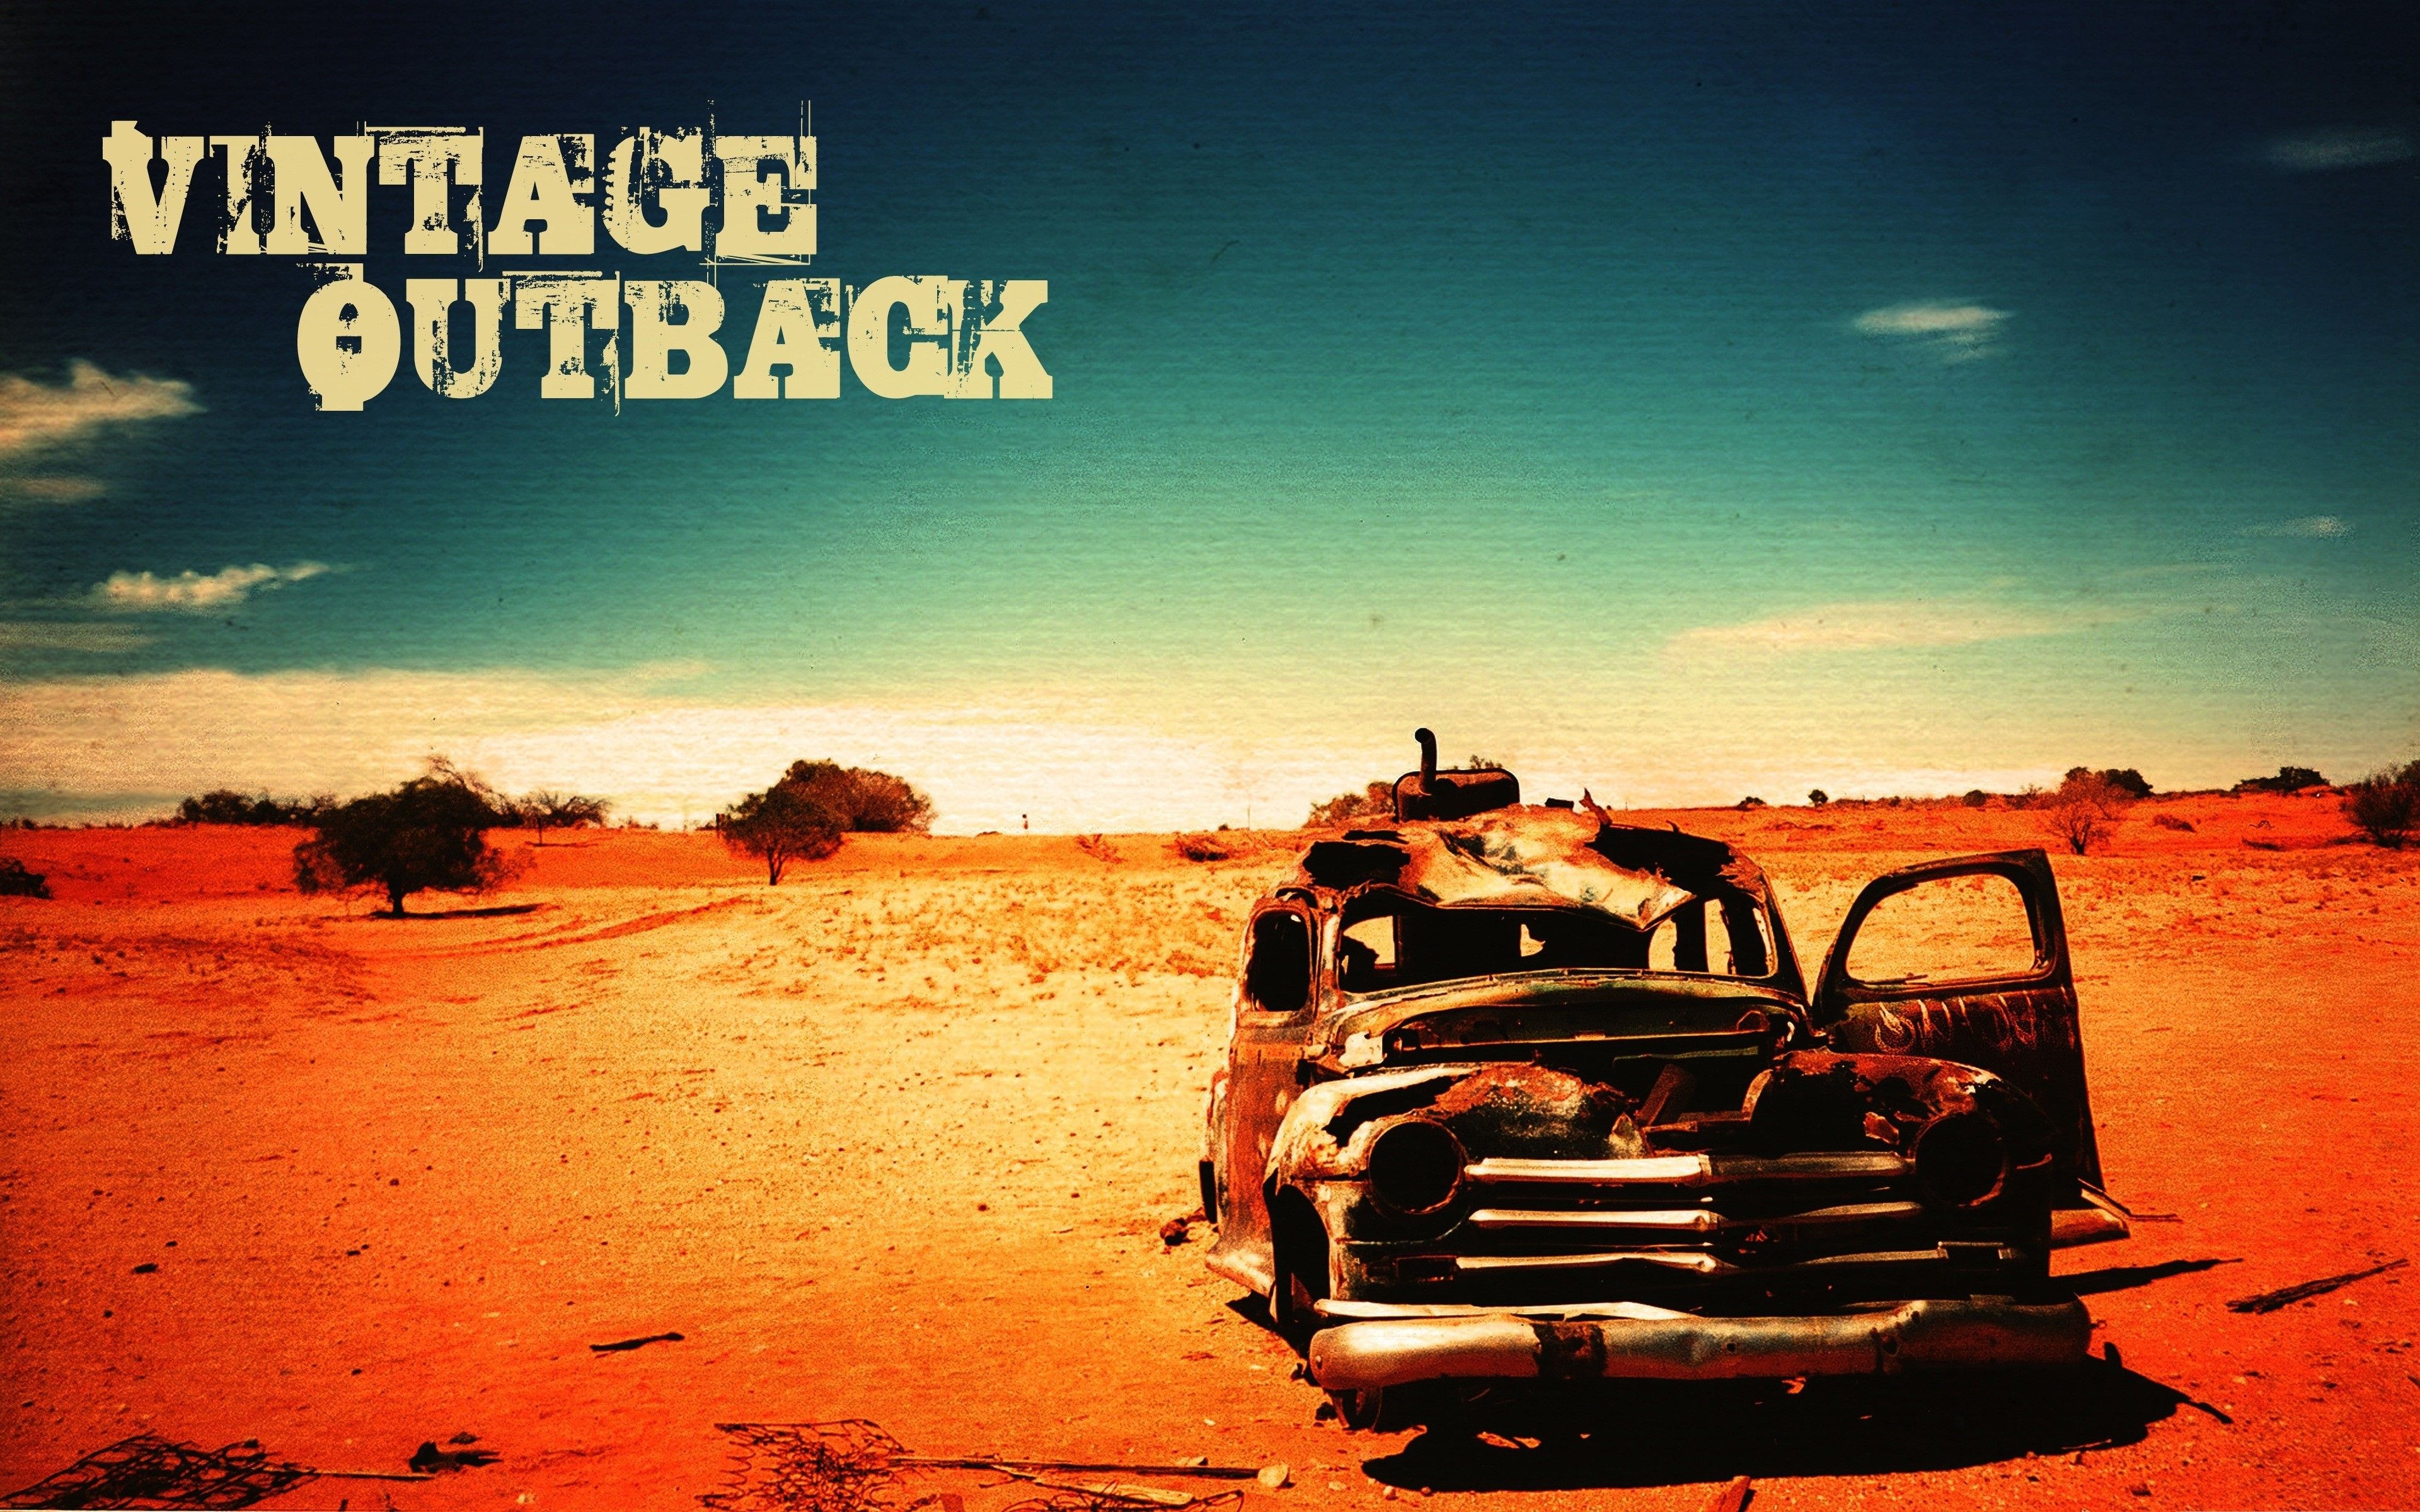 Outback deserts old vintage wallpaper. PC